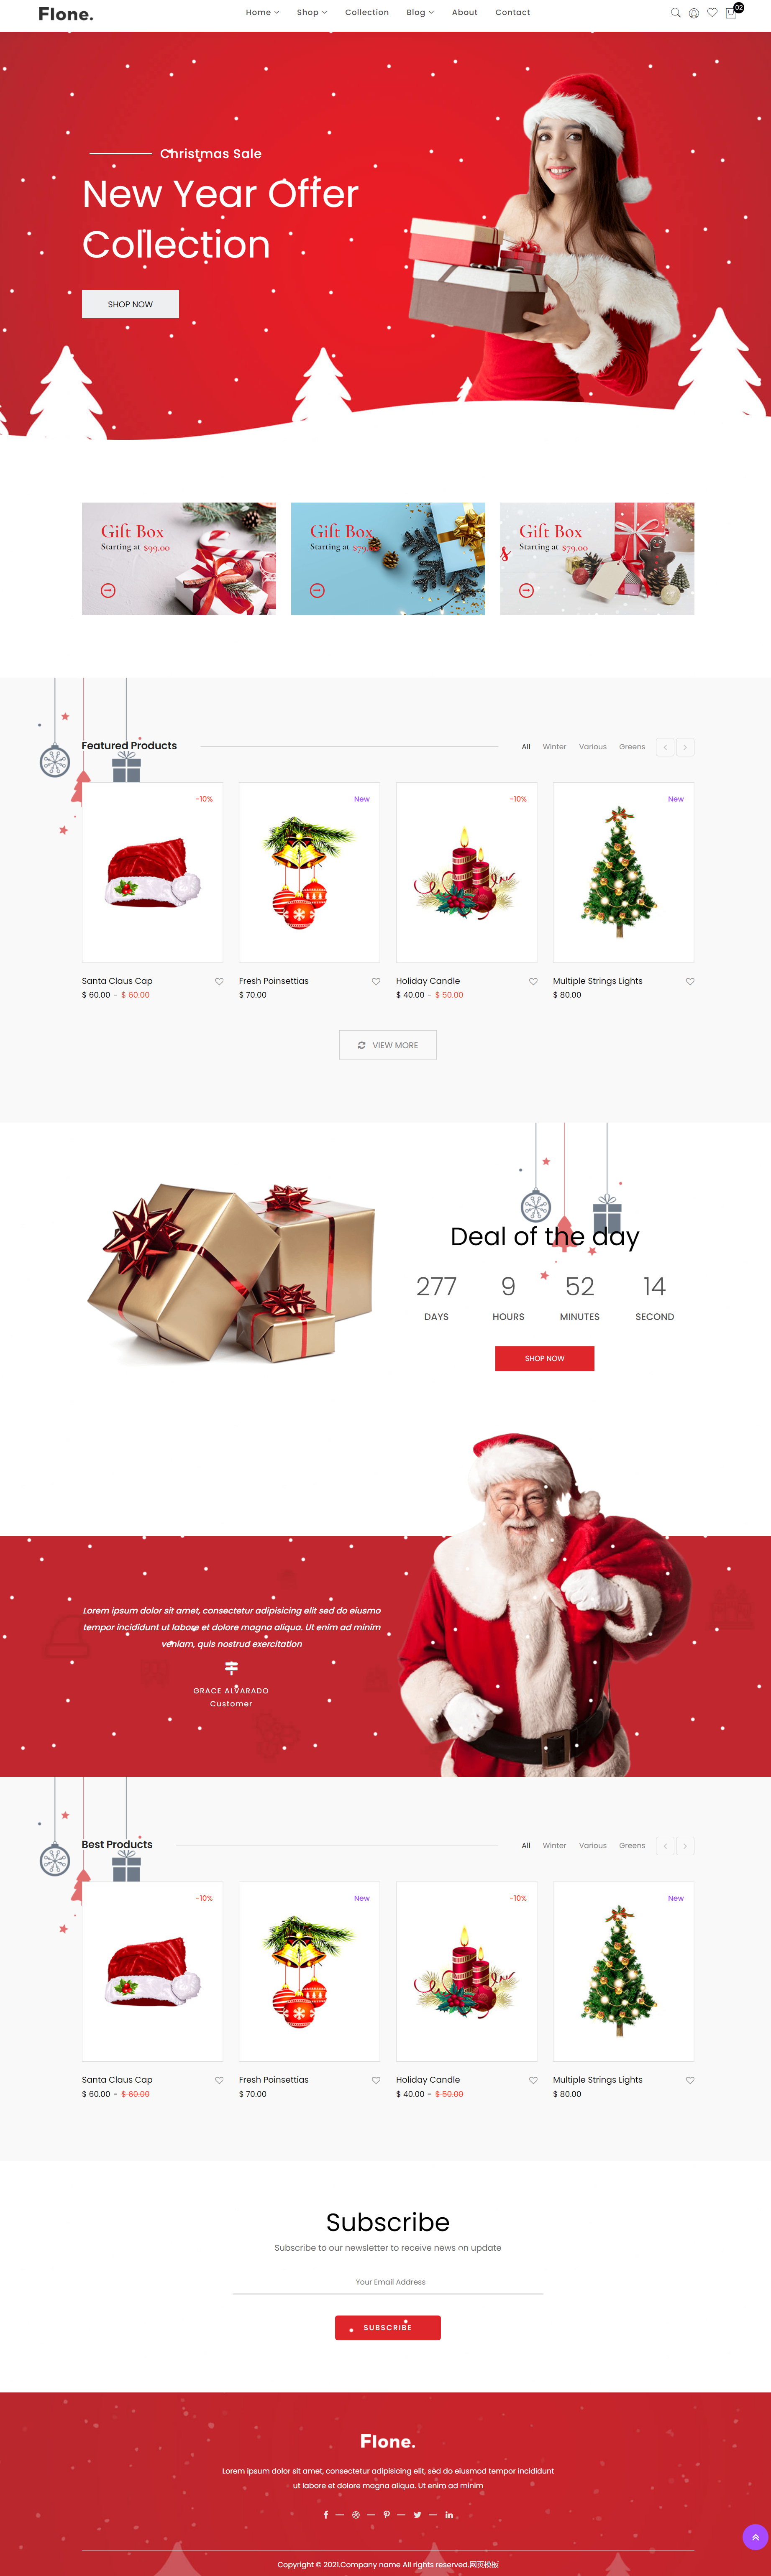 红色简洁风格响应式新年圣诞节企业网站模板